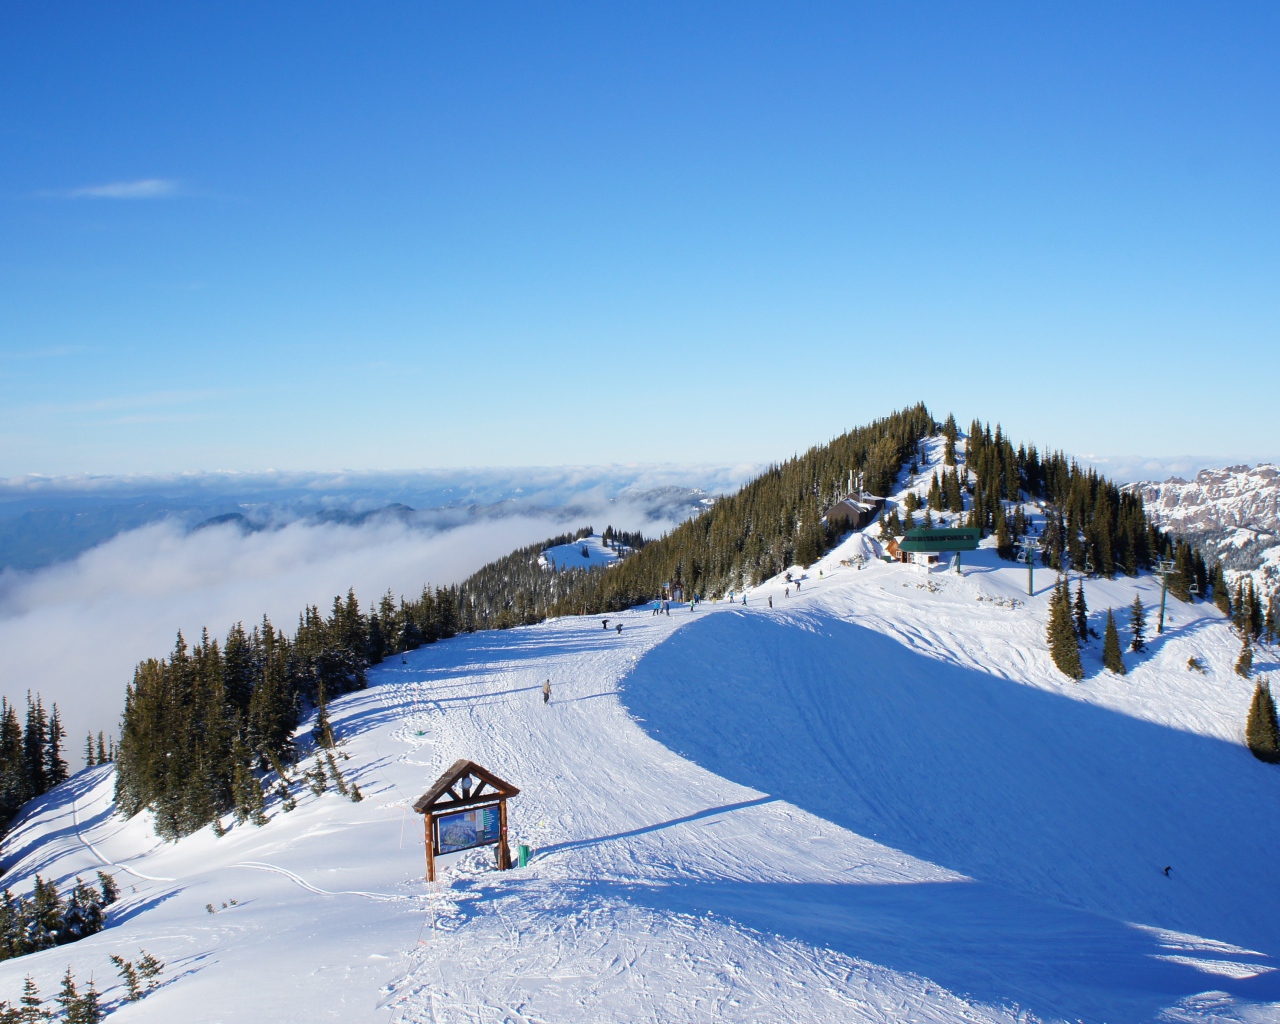 Ski resort in the United States